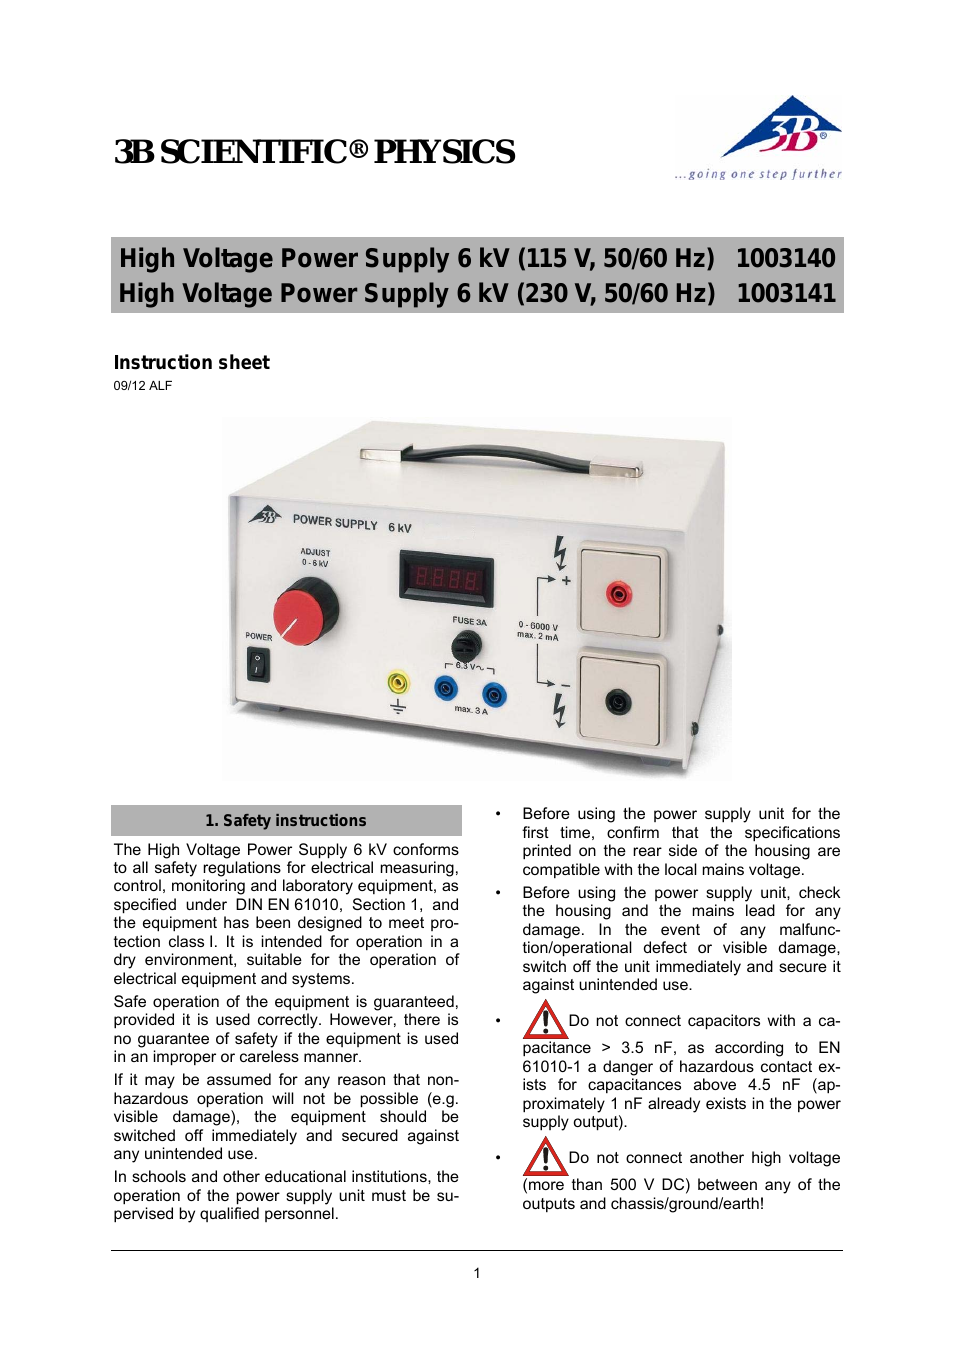 High Voltage Power Supply 6 kV (230 V, 50__60 Hz)